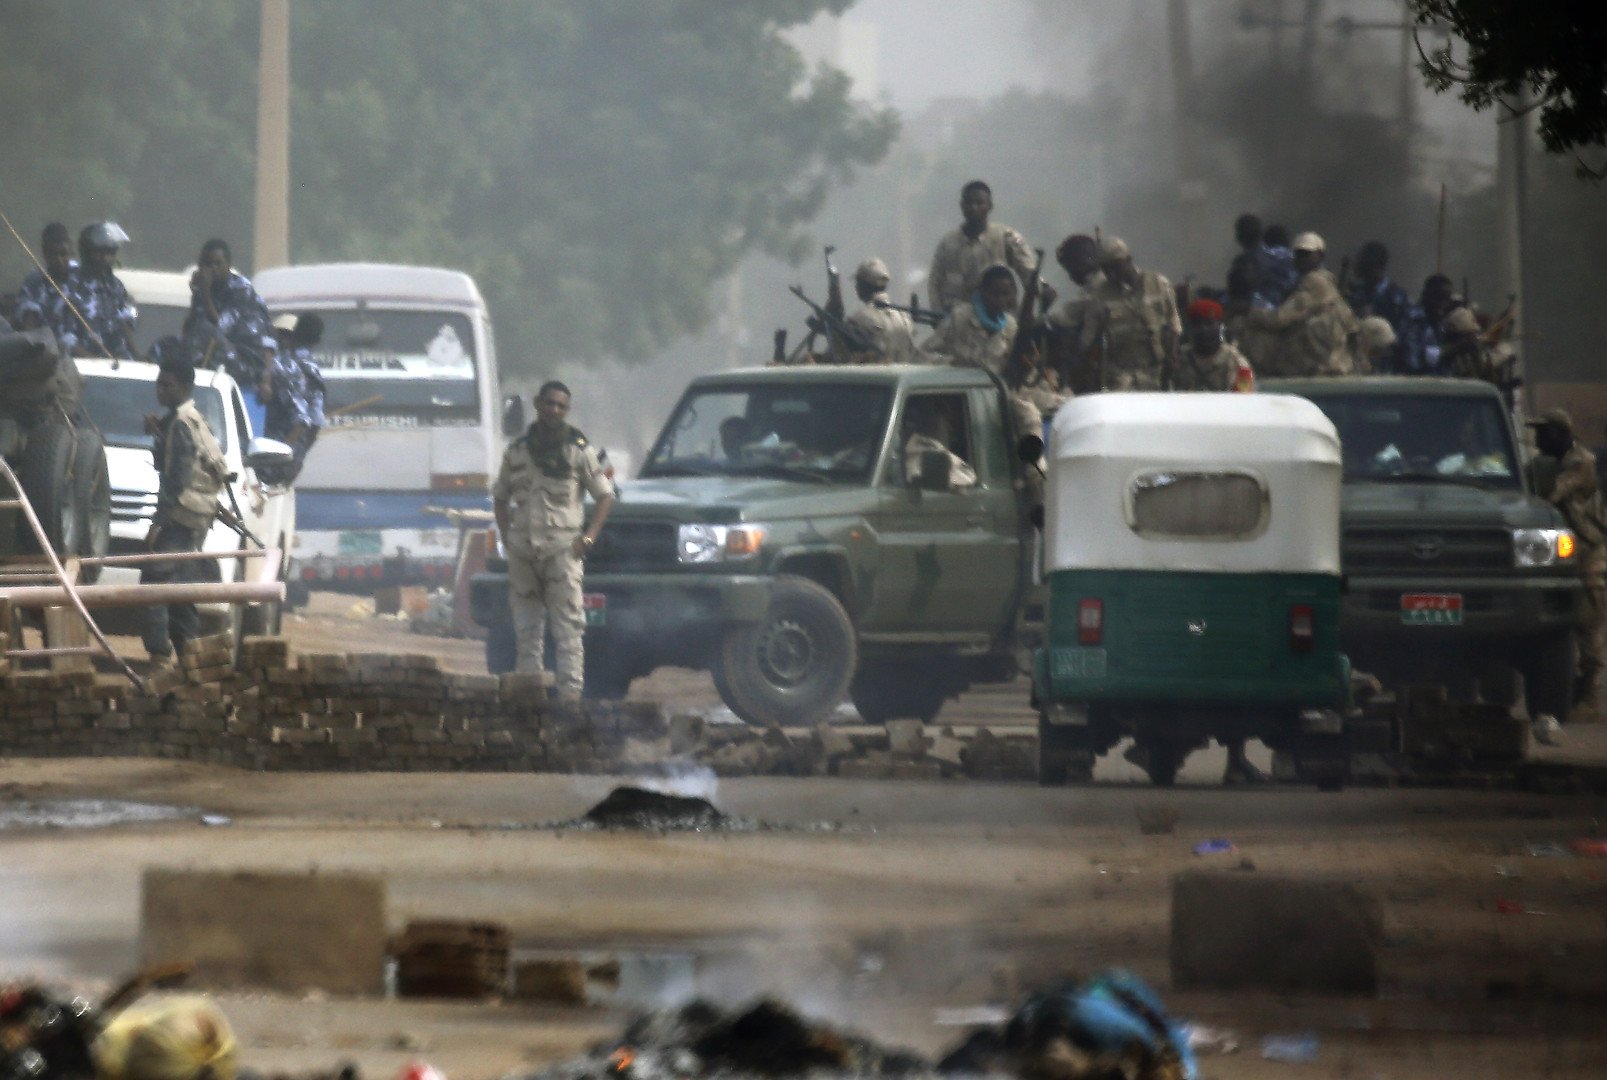 السودان.. ارتفاع عدد ضحايا فض الاعتصام بالخرطوم لـ35 قتيلا والنائب العام يأمر بالتحقيق